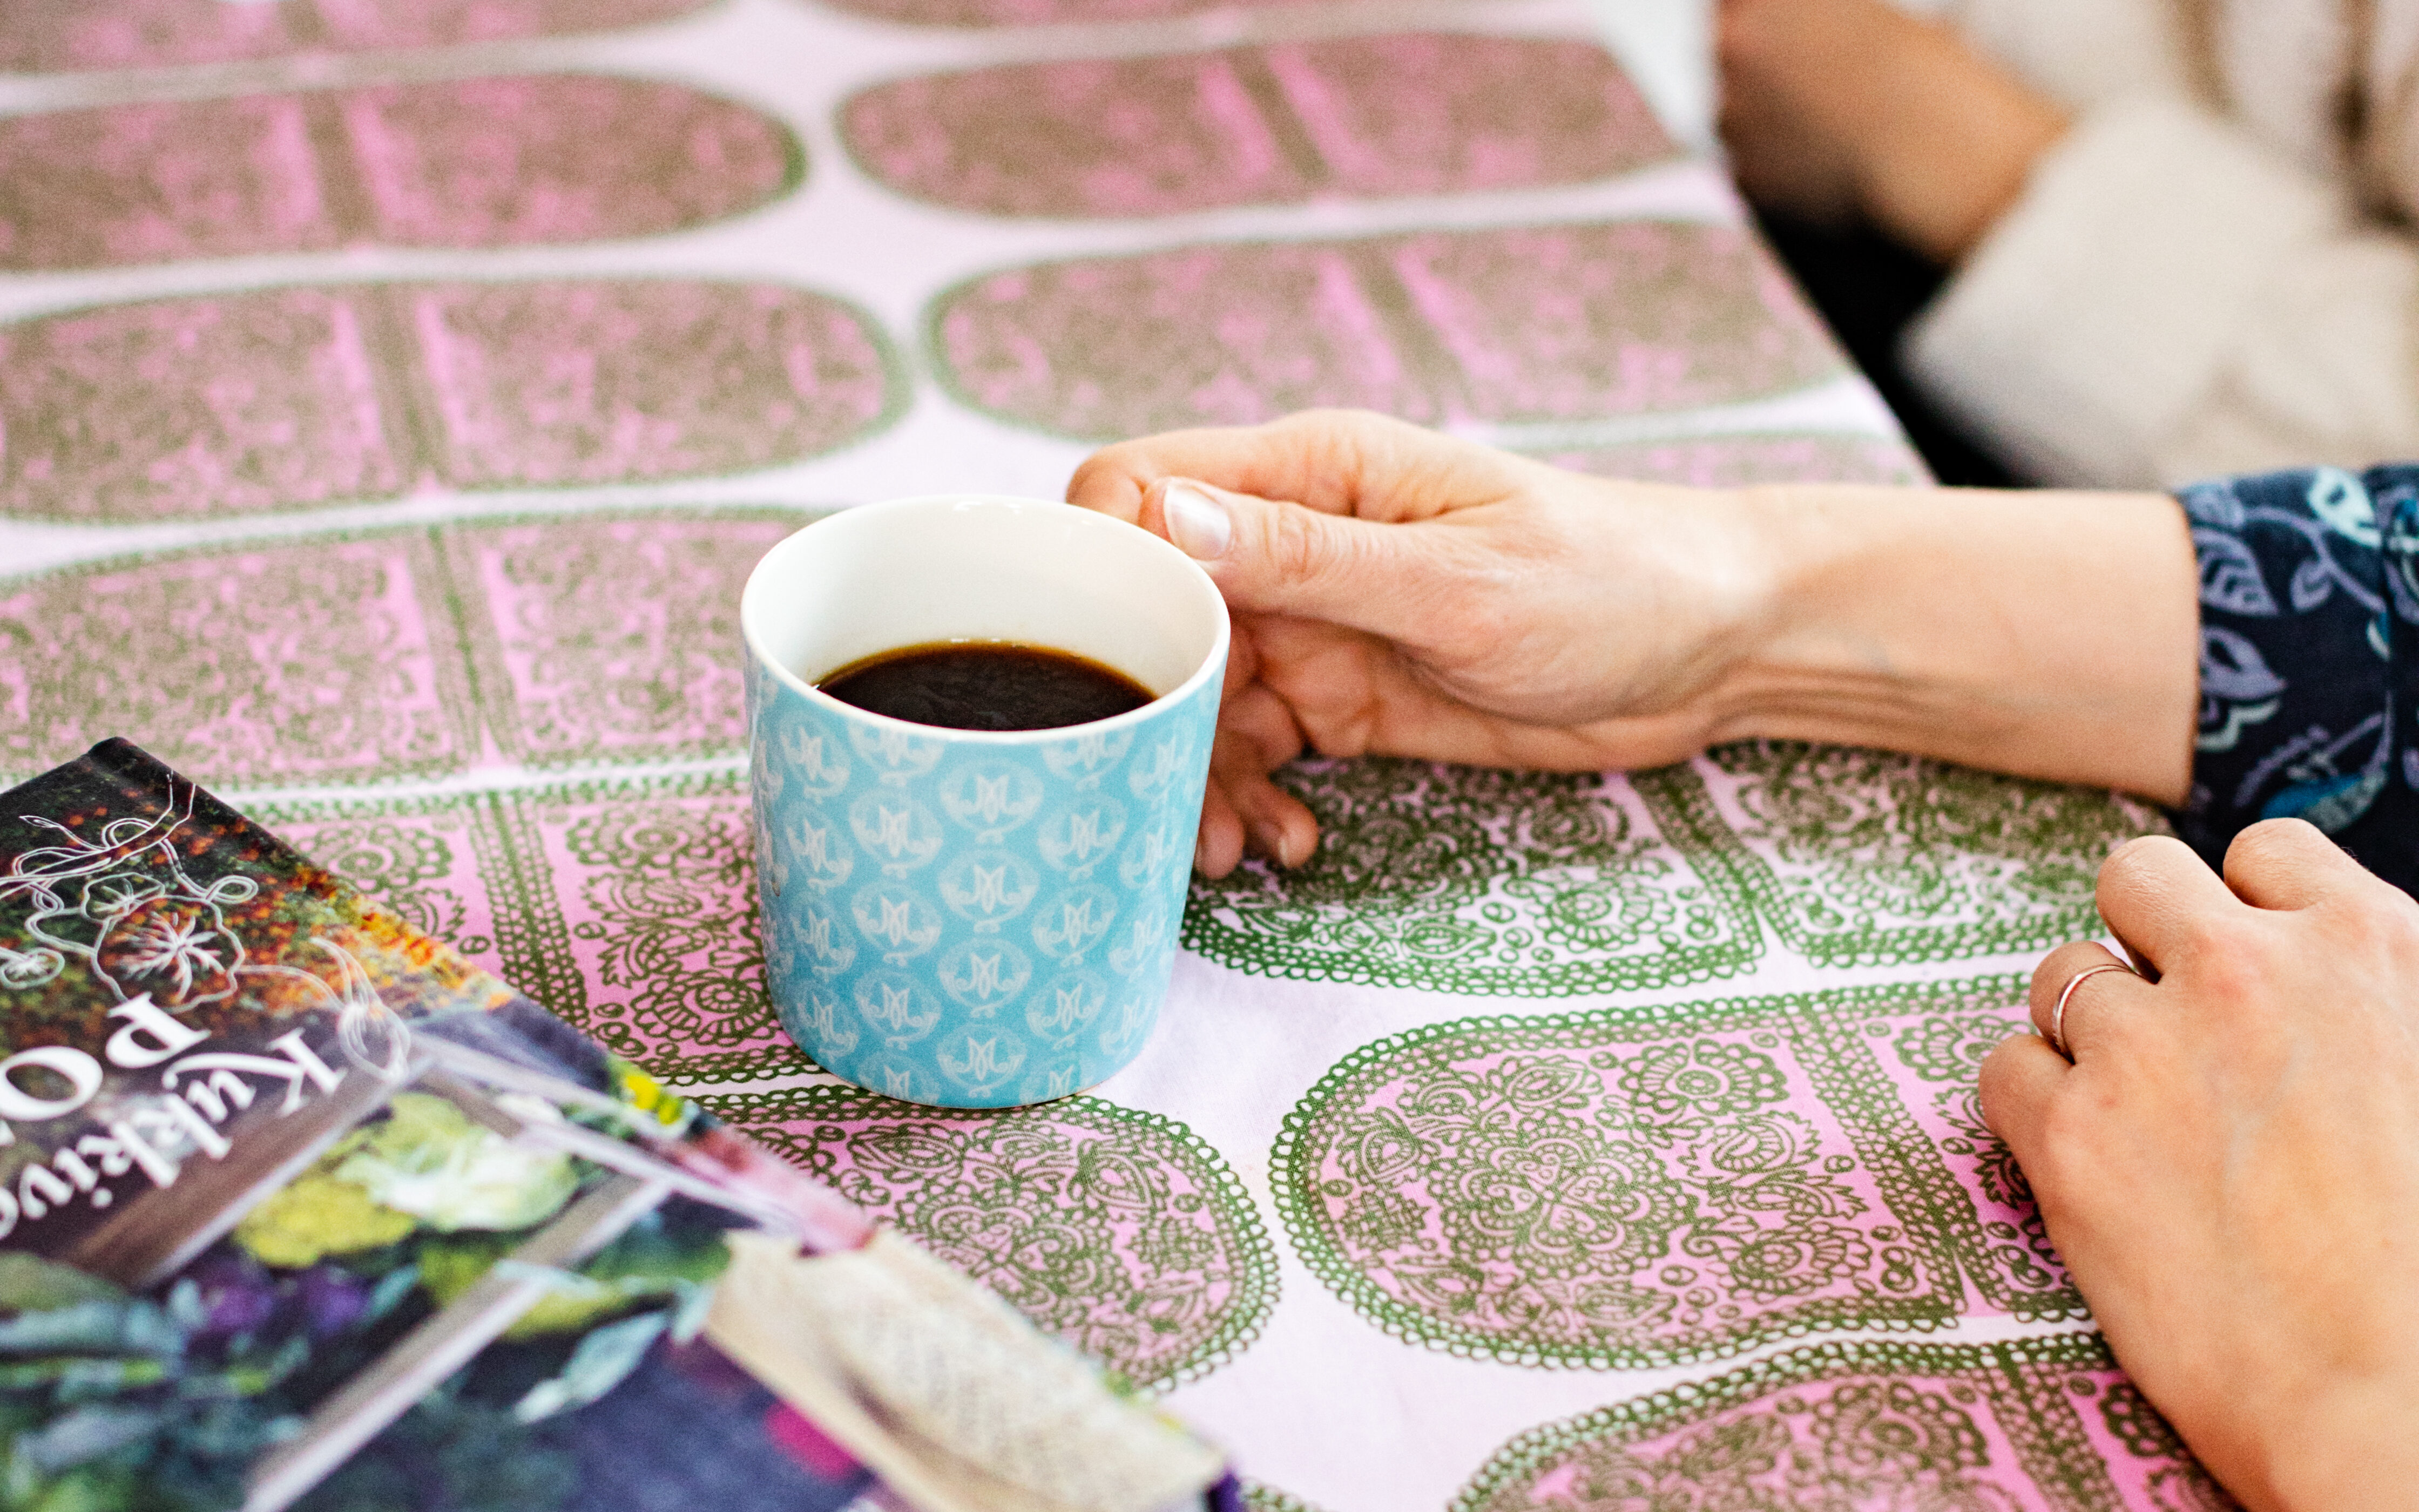 Pöydän päällä on värikäs pöytäliina, kaksi värikästä kirjaa ja kasa paperia. Pöydän ääressä istuu kaksi ihmistä ja molempien edessä on kahvikuppi.